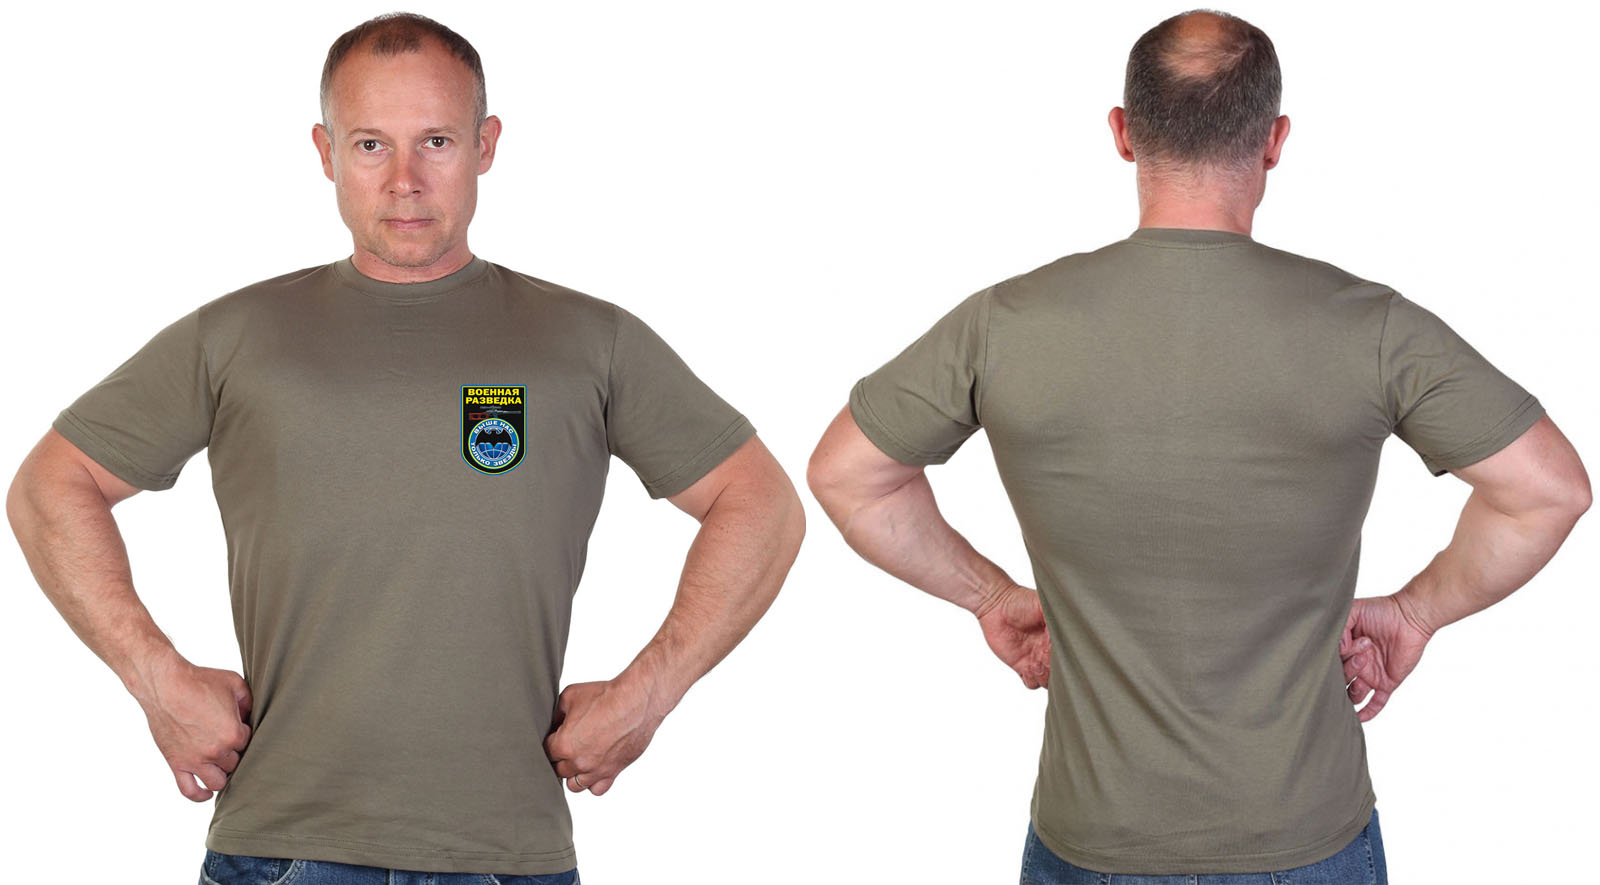 Оливковая футболка с термотрансфером "Военная разведка" 